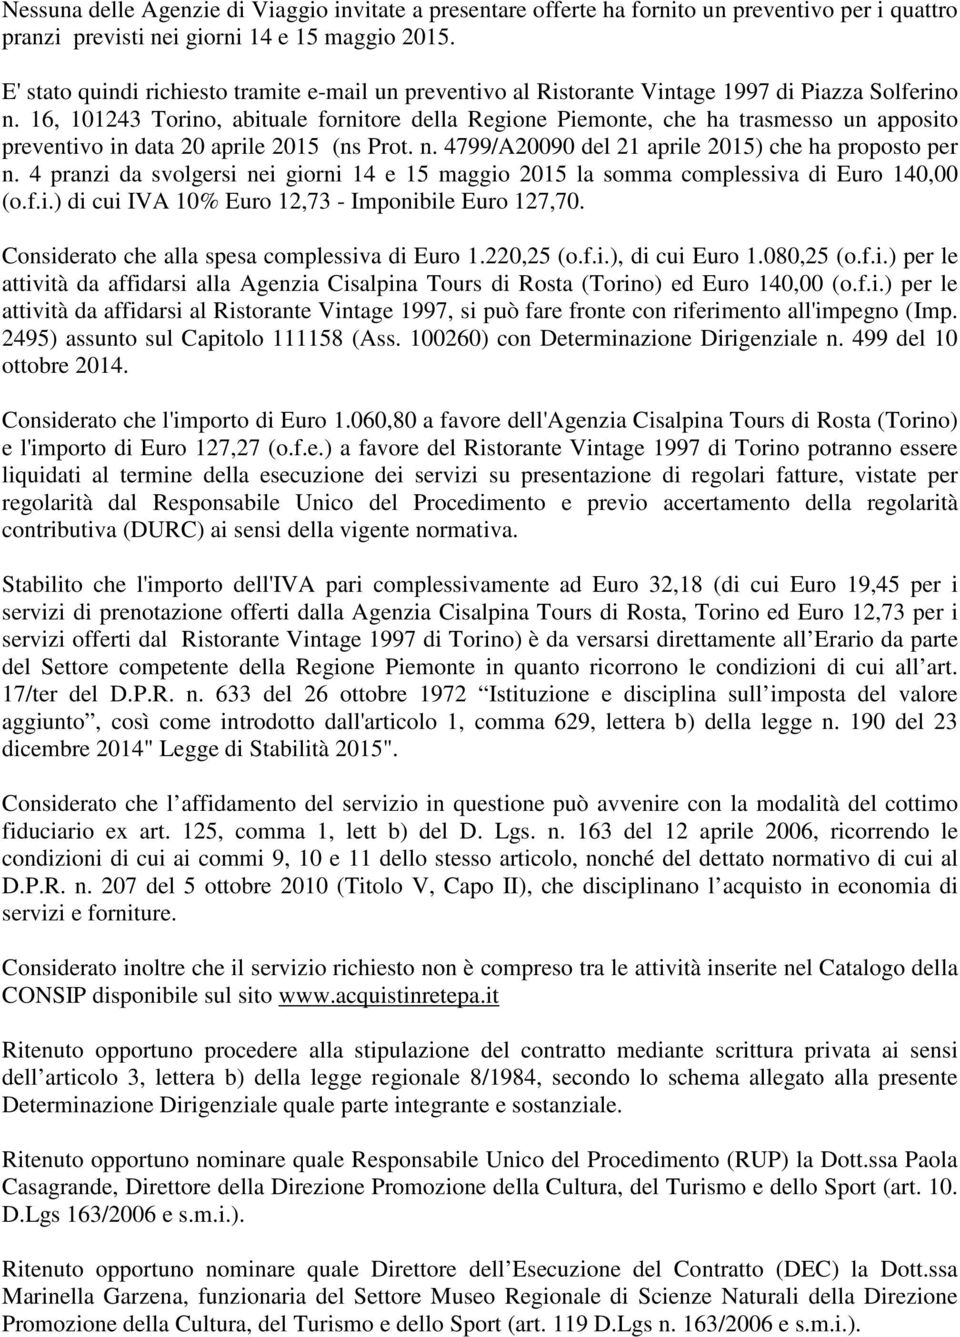 16, 101243 Torino, abituale fornitore della Regione Piemonte, che ha trasmesso un apposito preventivo in data 20 aprile 2015 (ns Prot. n. 4799/A20090 del 21 aprile 2015) che ha proposto per n.